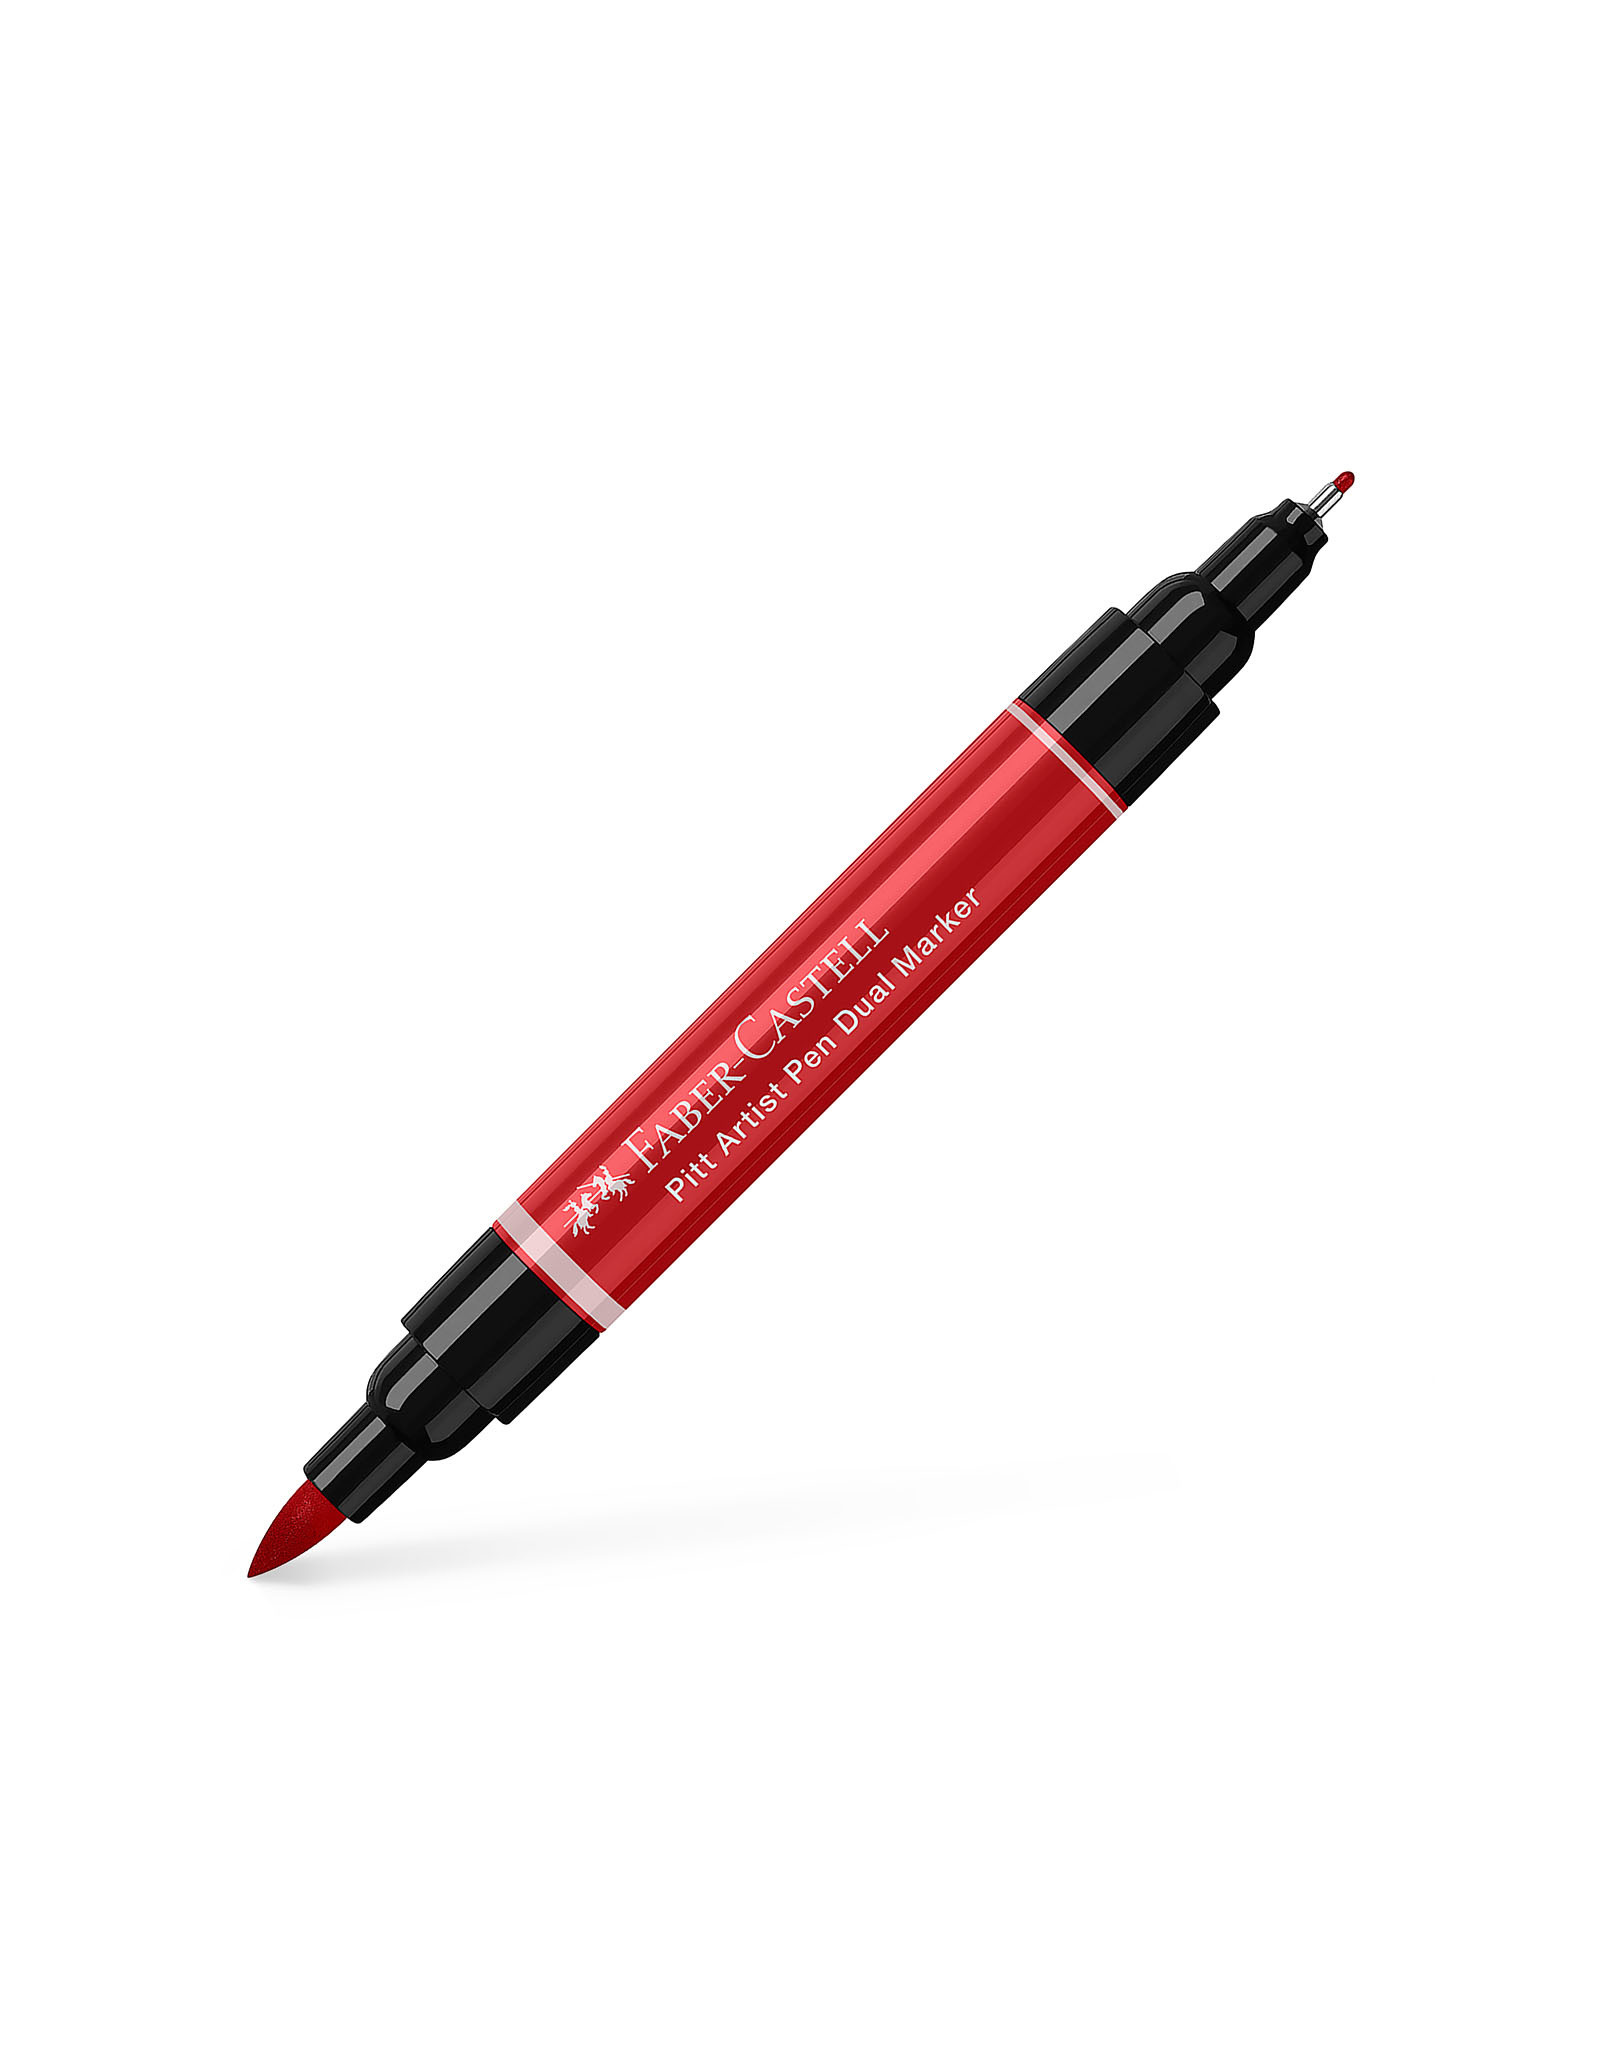 FABER-CASTELL Pitt Artist Pen Dual Tip Marker, Deep Scarlet Red